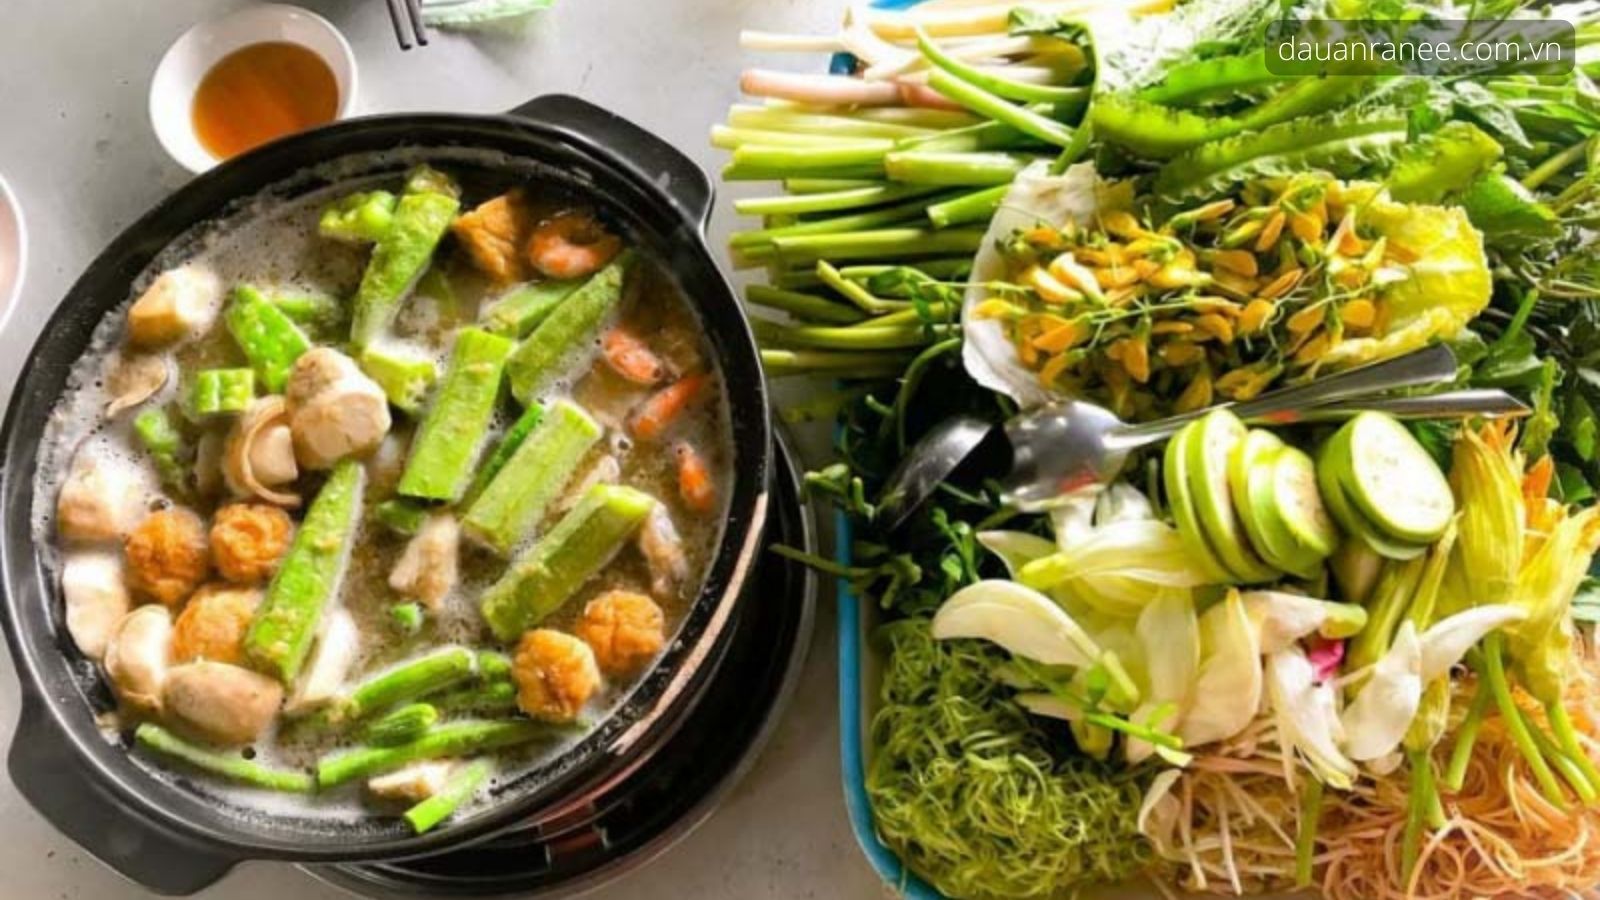 Lẩu mắm Cần Thơ - Đặc sản bến Ninh Kiều, Cần Thơ thơm đặc trưng ăn kèm với rau sống